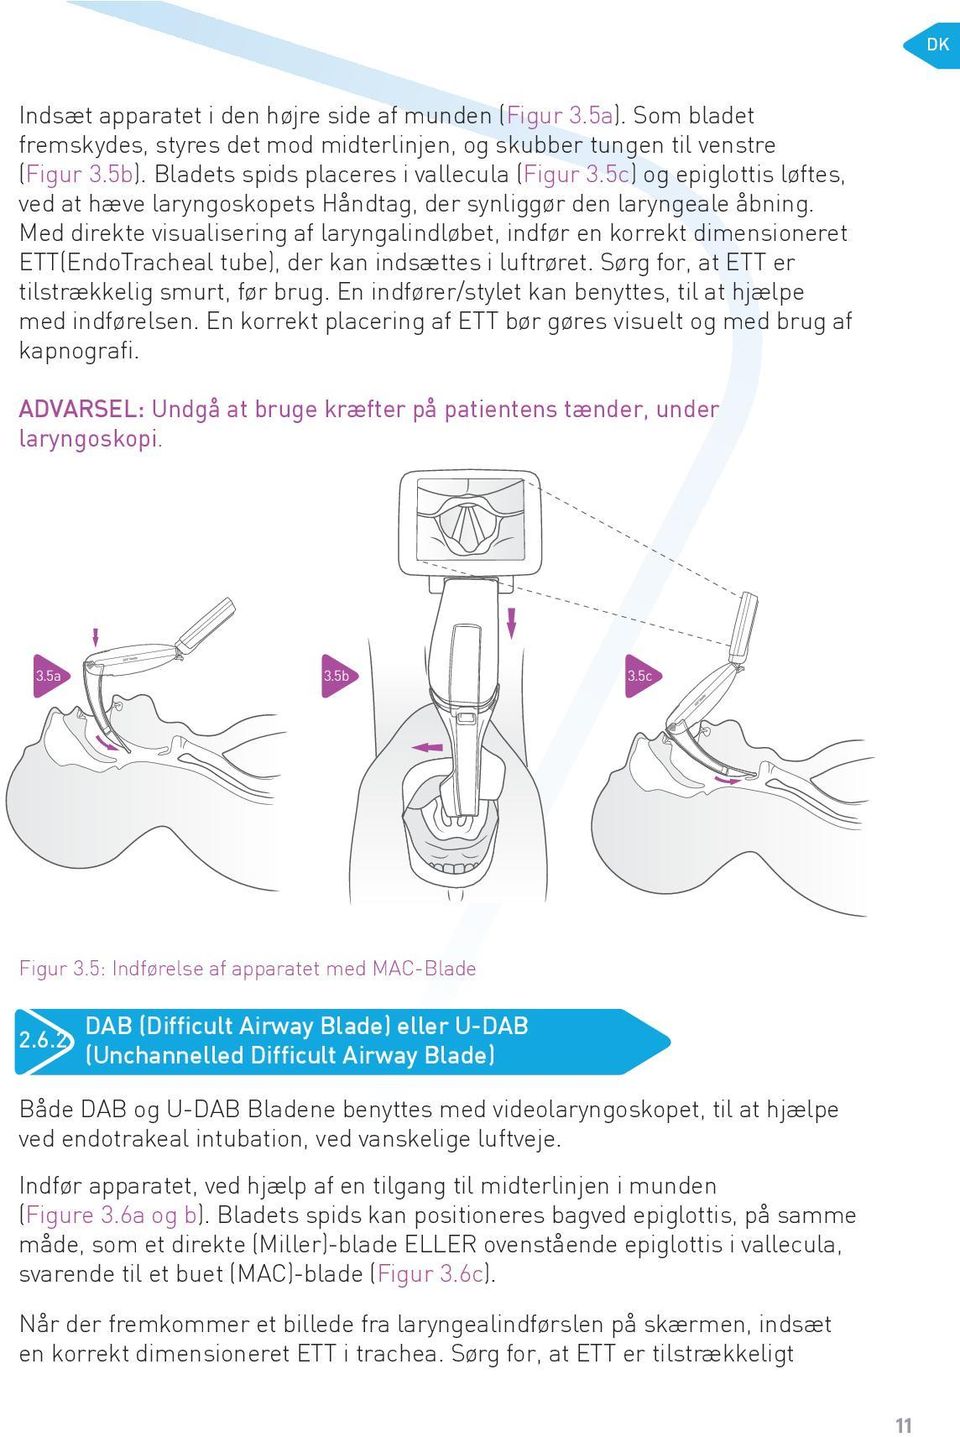 Med direkte visualisering af laryngalindløbet, indfør en korrekt dimensioneret ETT(EndoTracheal tube), der kan indsættes i luftrøret. Sørg for, at ETT er tilstrækkelig smurt, før brug.